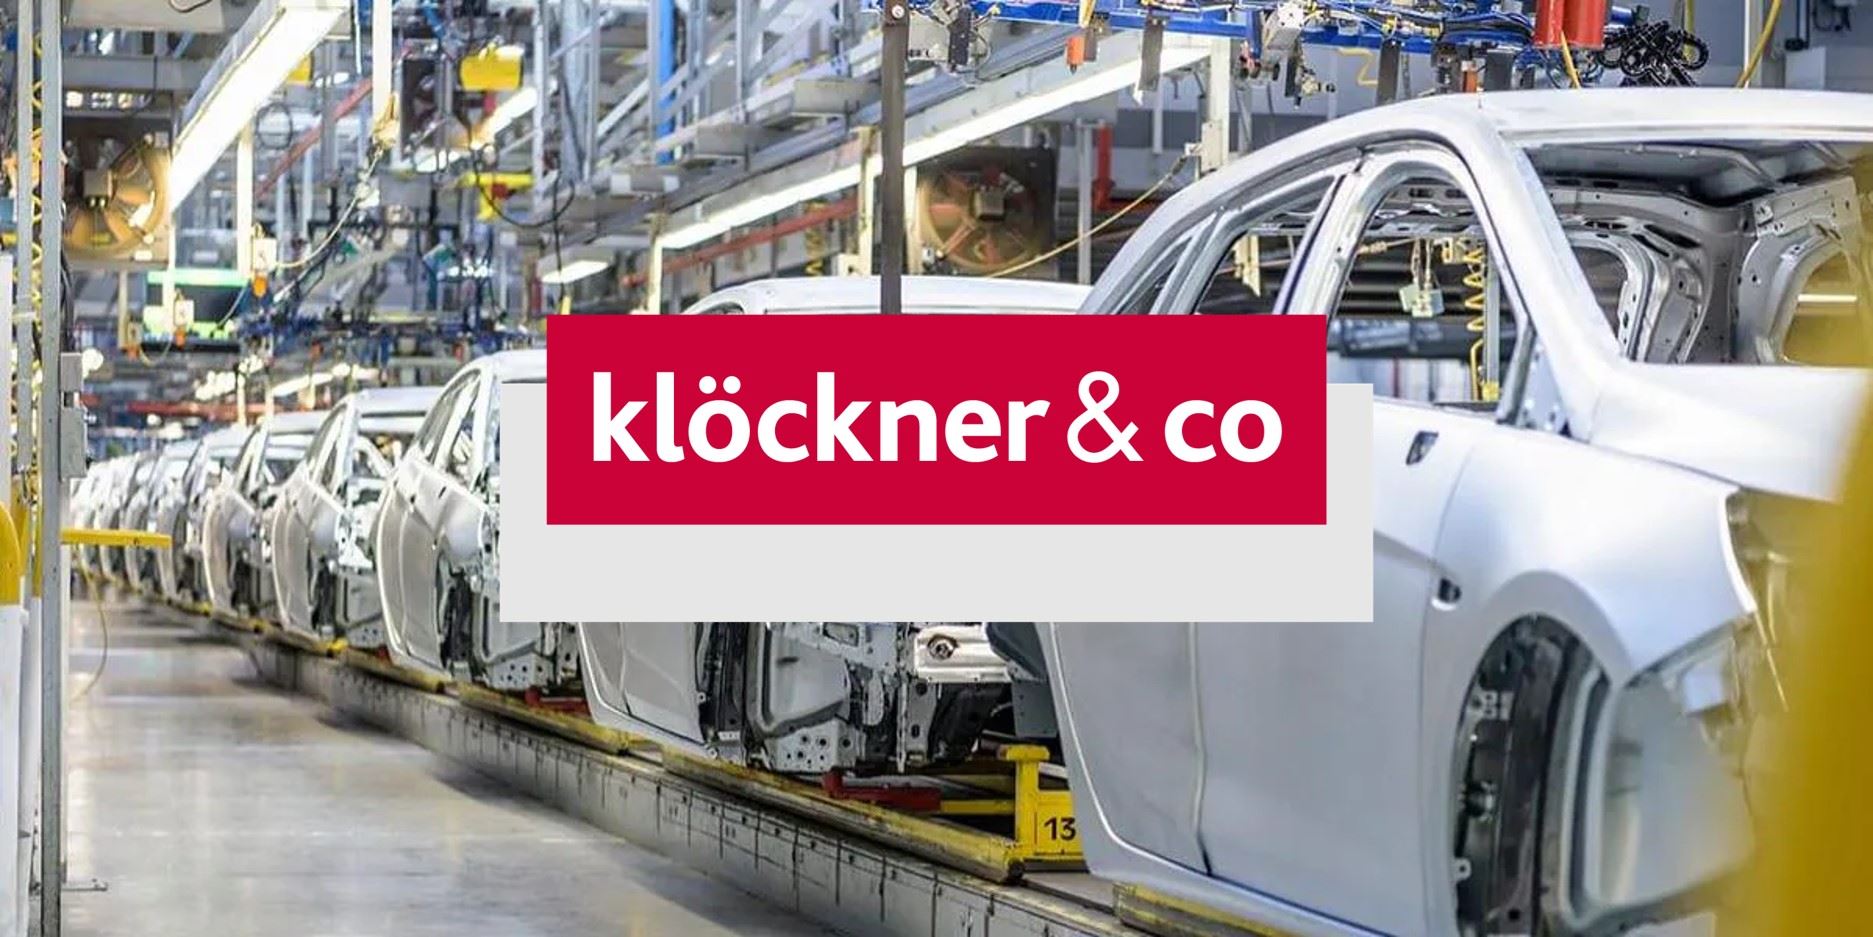 Klöckner & Co, silisli sac ile Amerika'daki konumunu güçlendirmeyi hedefliyor